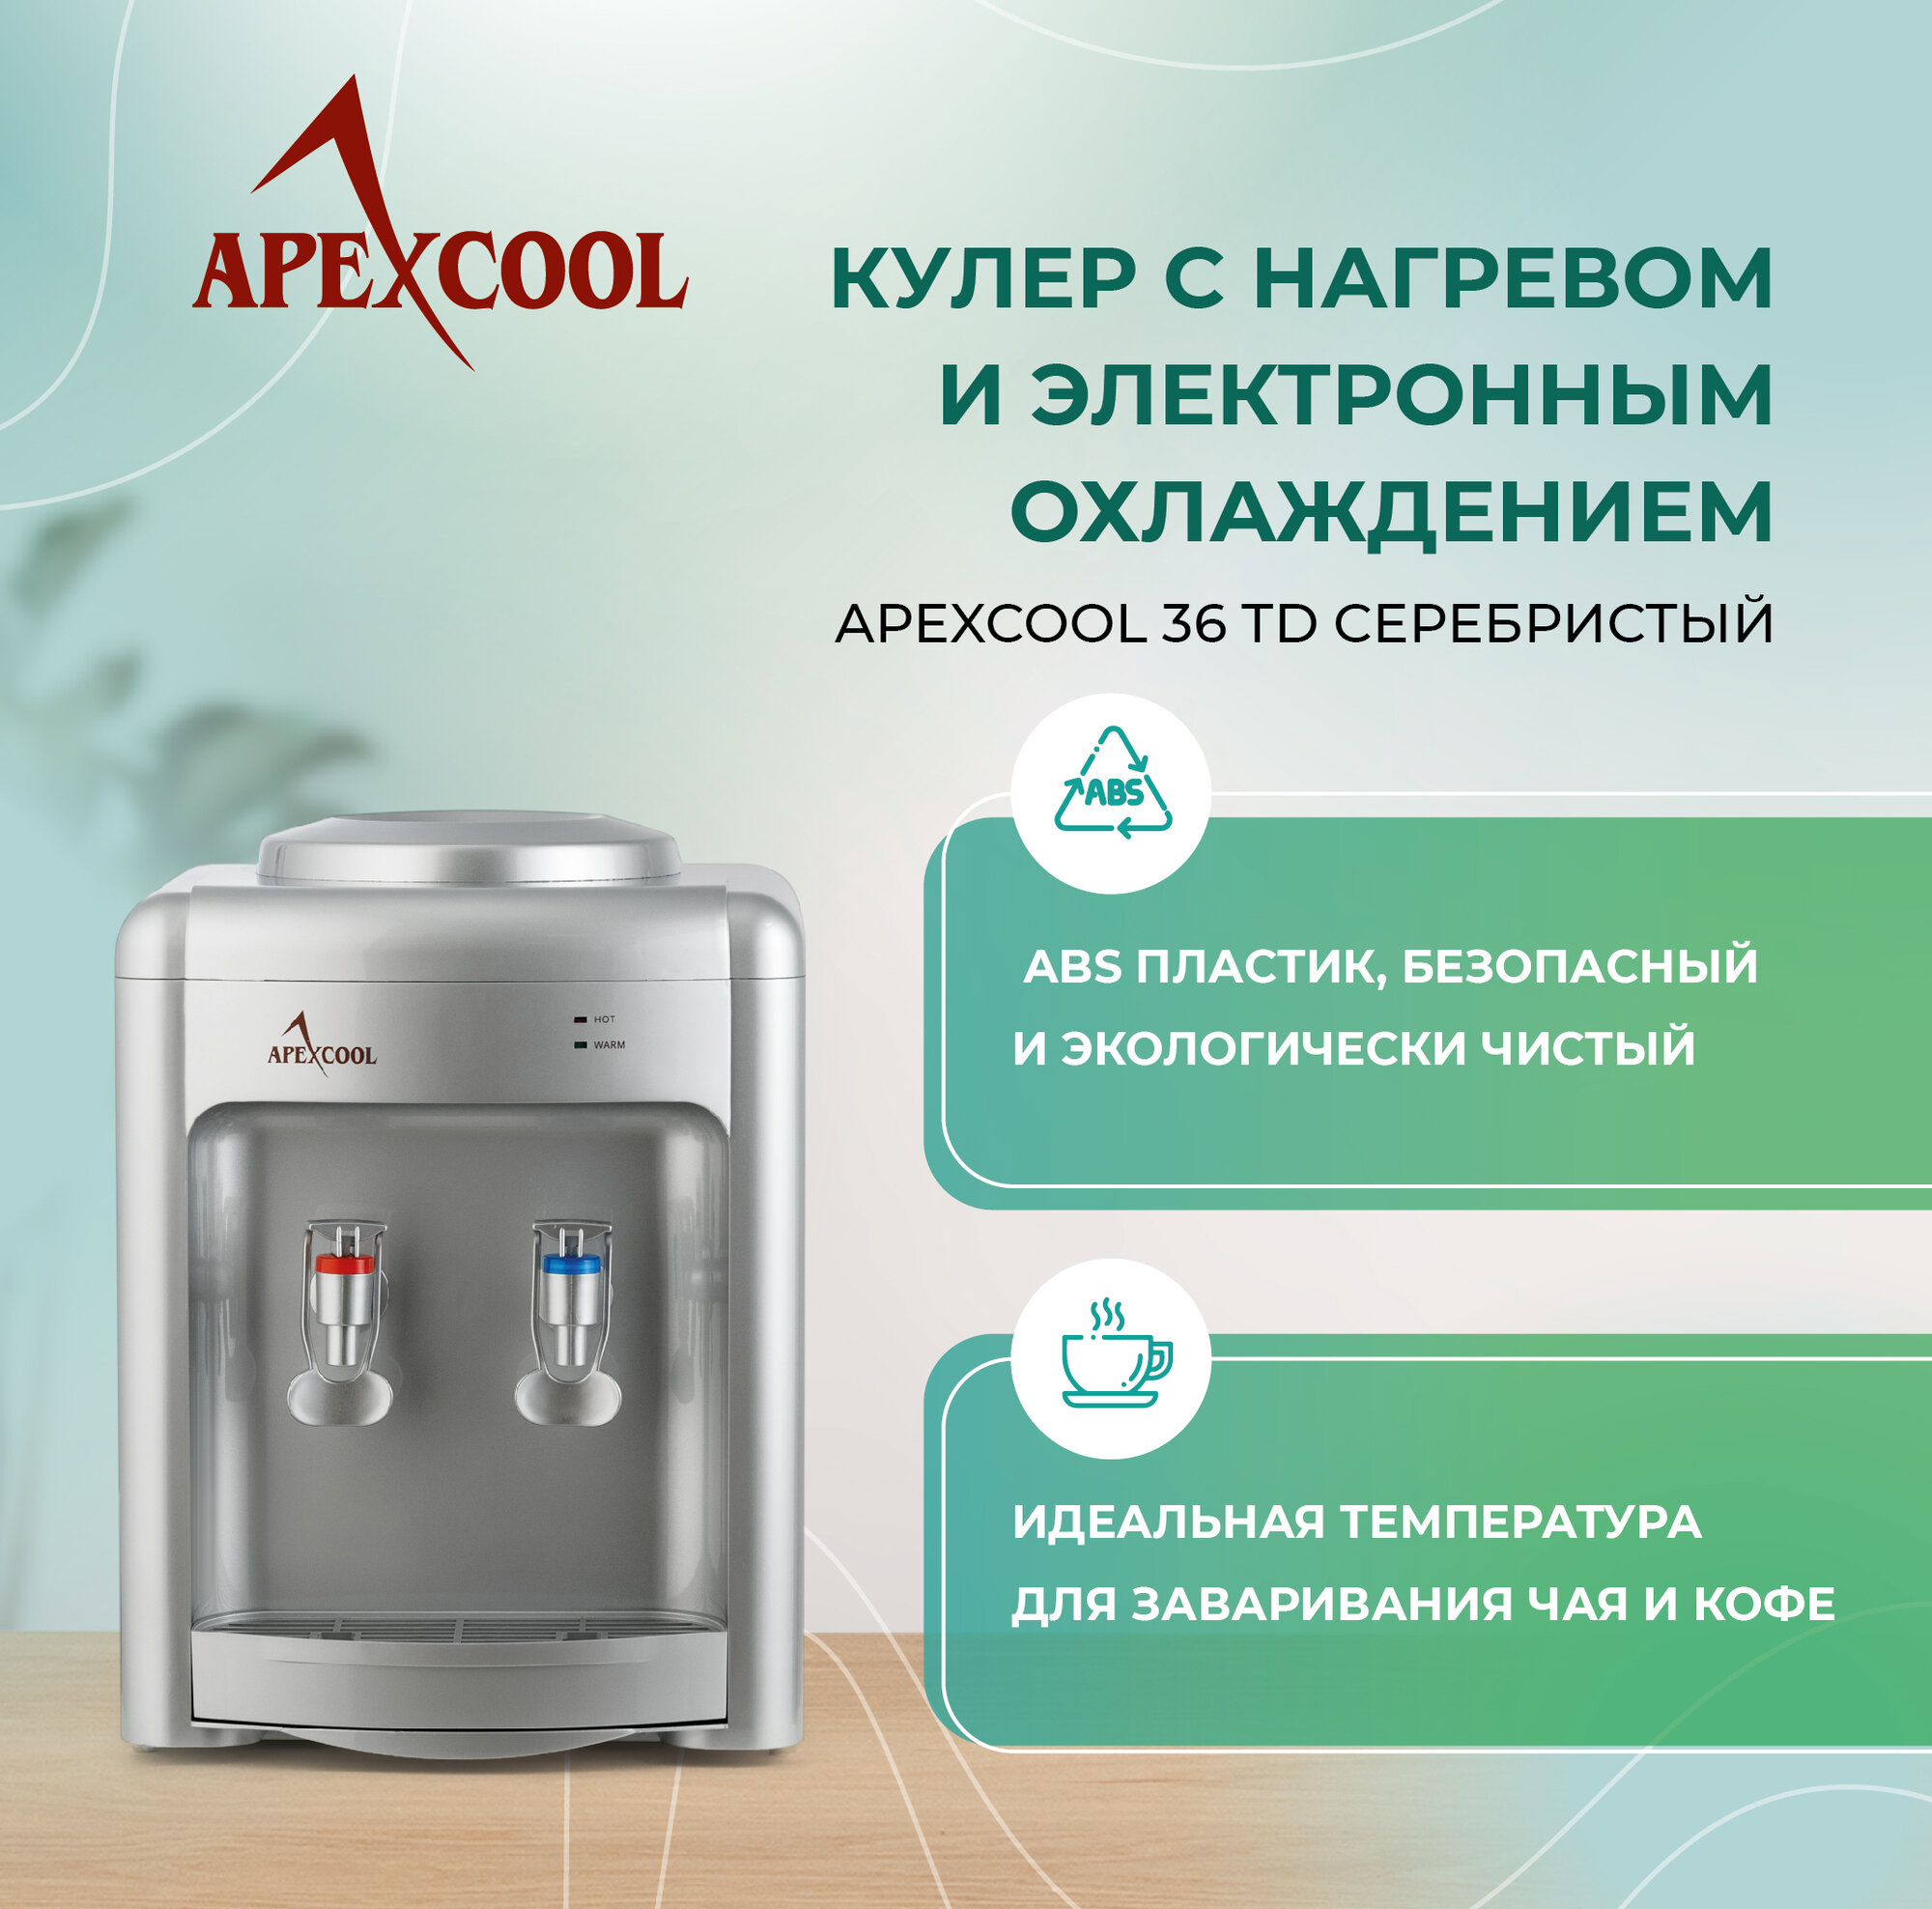 Кулер для воды настольный APEXCOOL 36TD серебристый нагрев и охлаждение